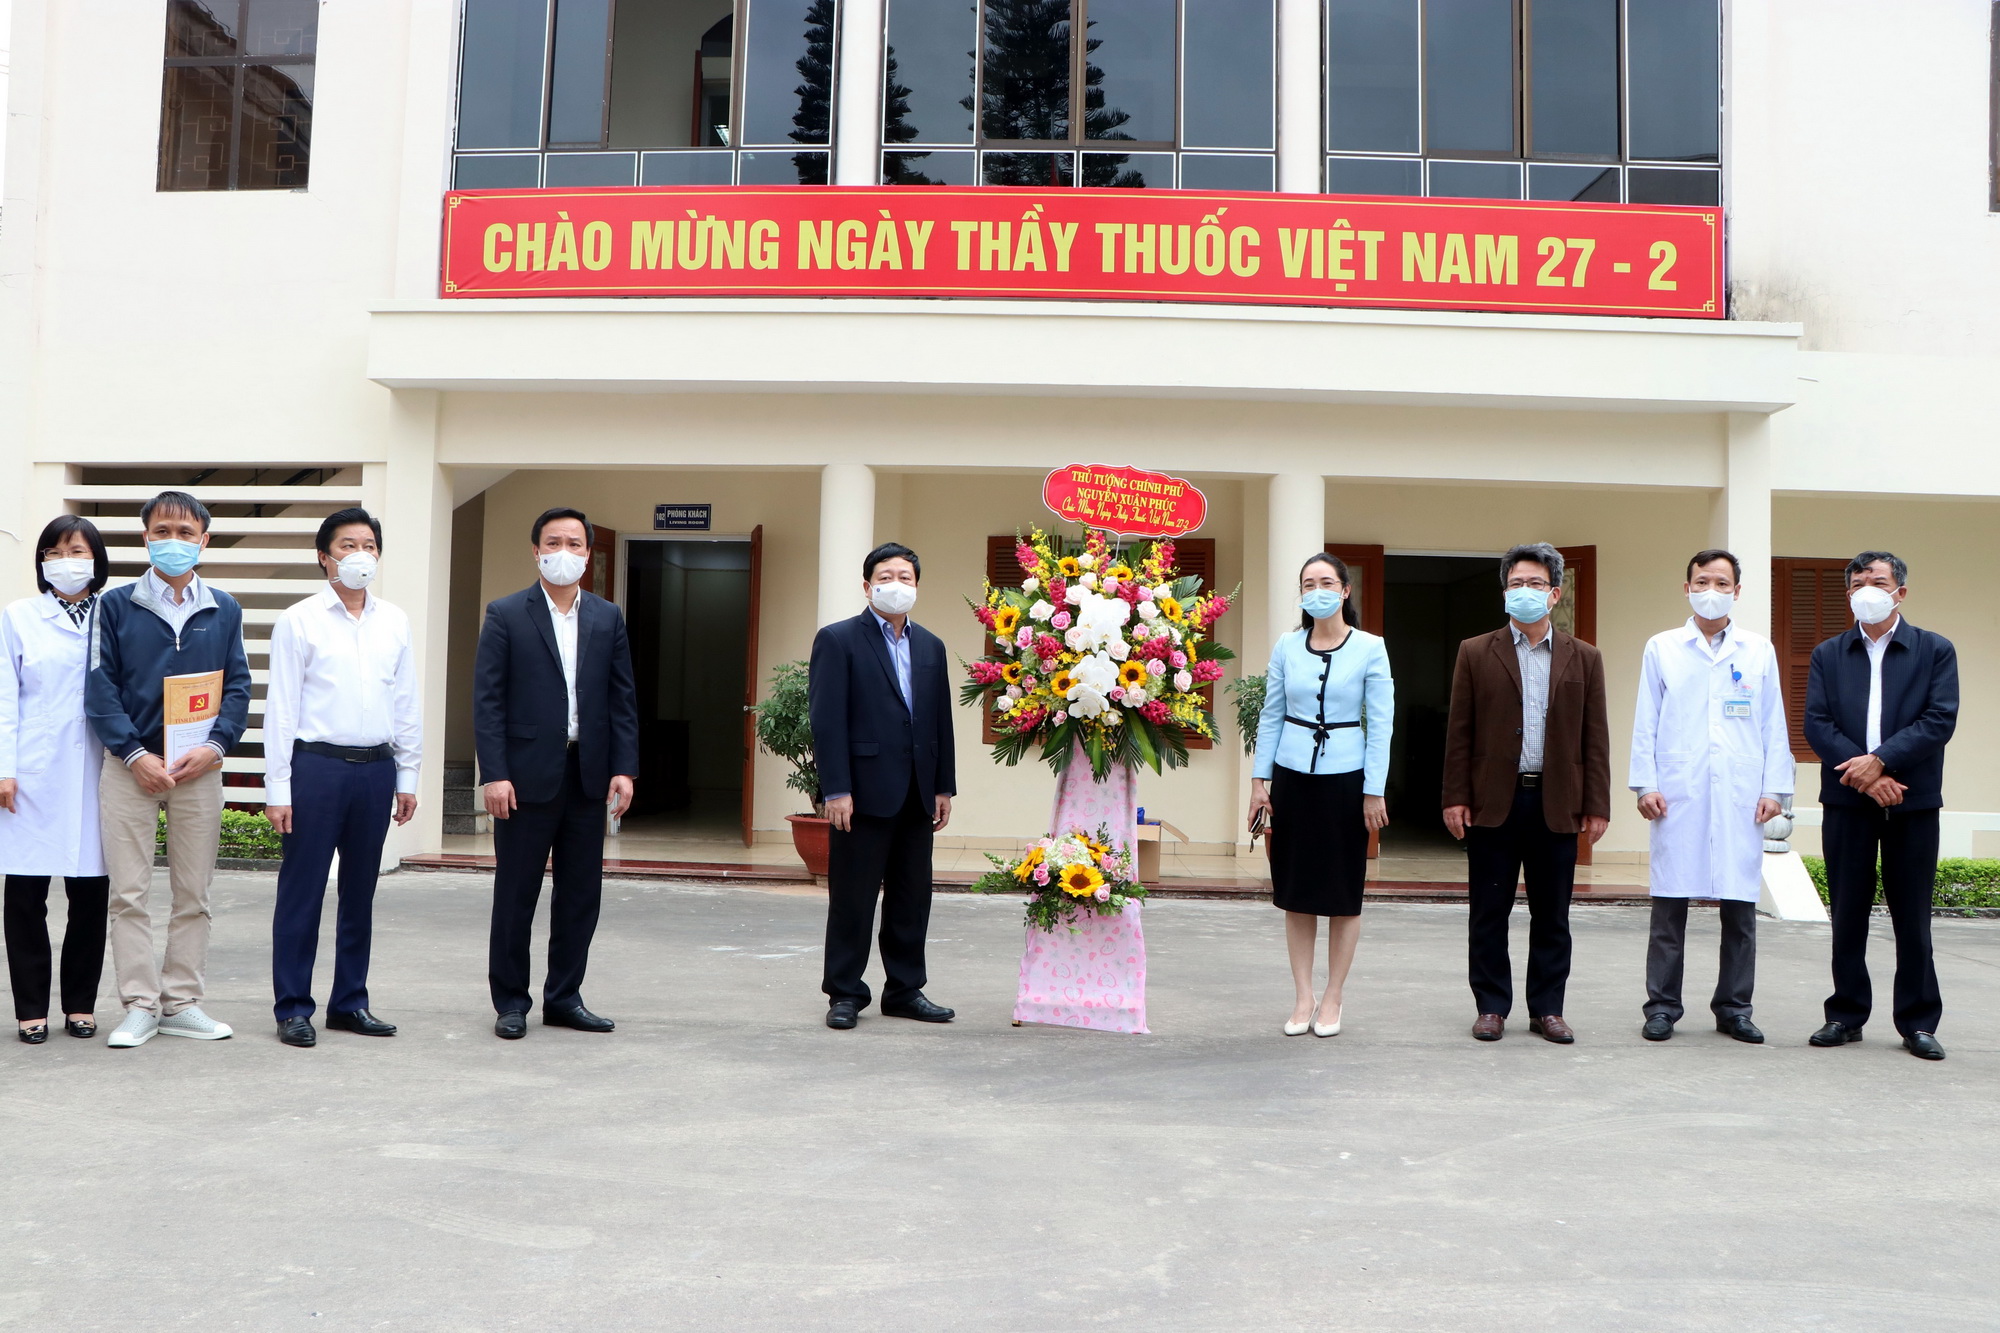 Trao tặng lẵng hoa của Thủ tướng Chính phủ Nguyễn Xuân Phúc chúc mừng các chiến sỹ áo trắng đang chống dịch COVID-19 tại Hải Dương. (Ảnh: Mạnh Tú/TTXVN)